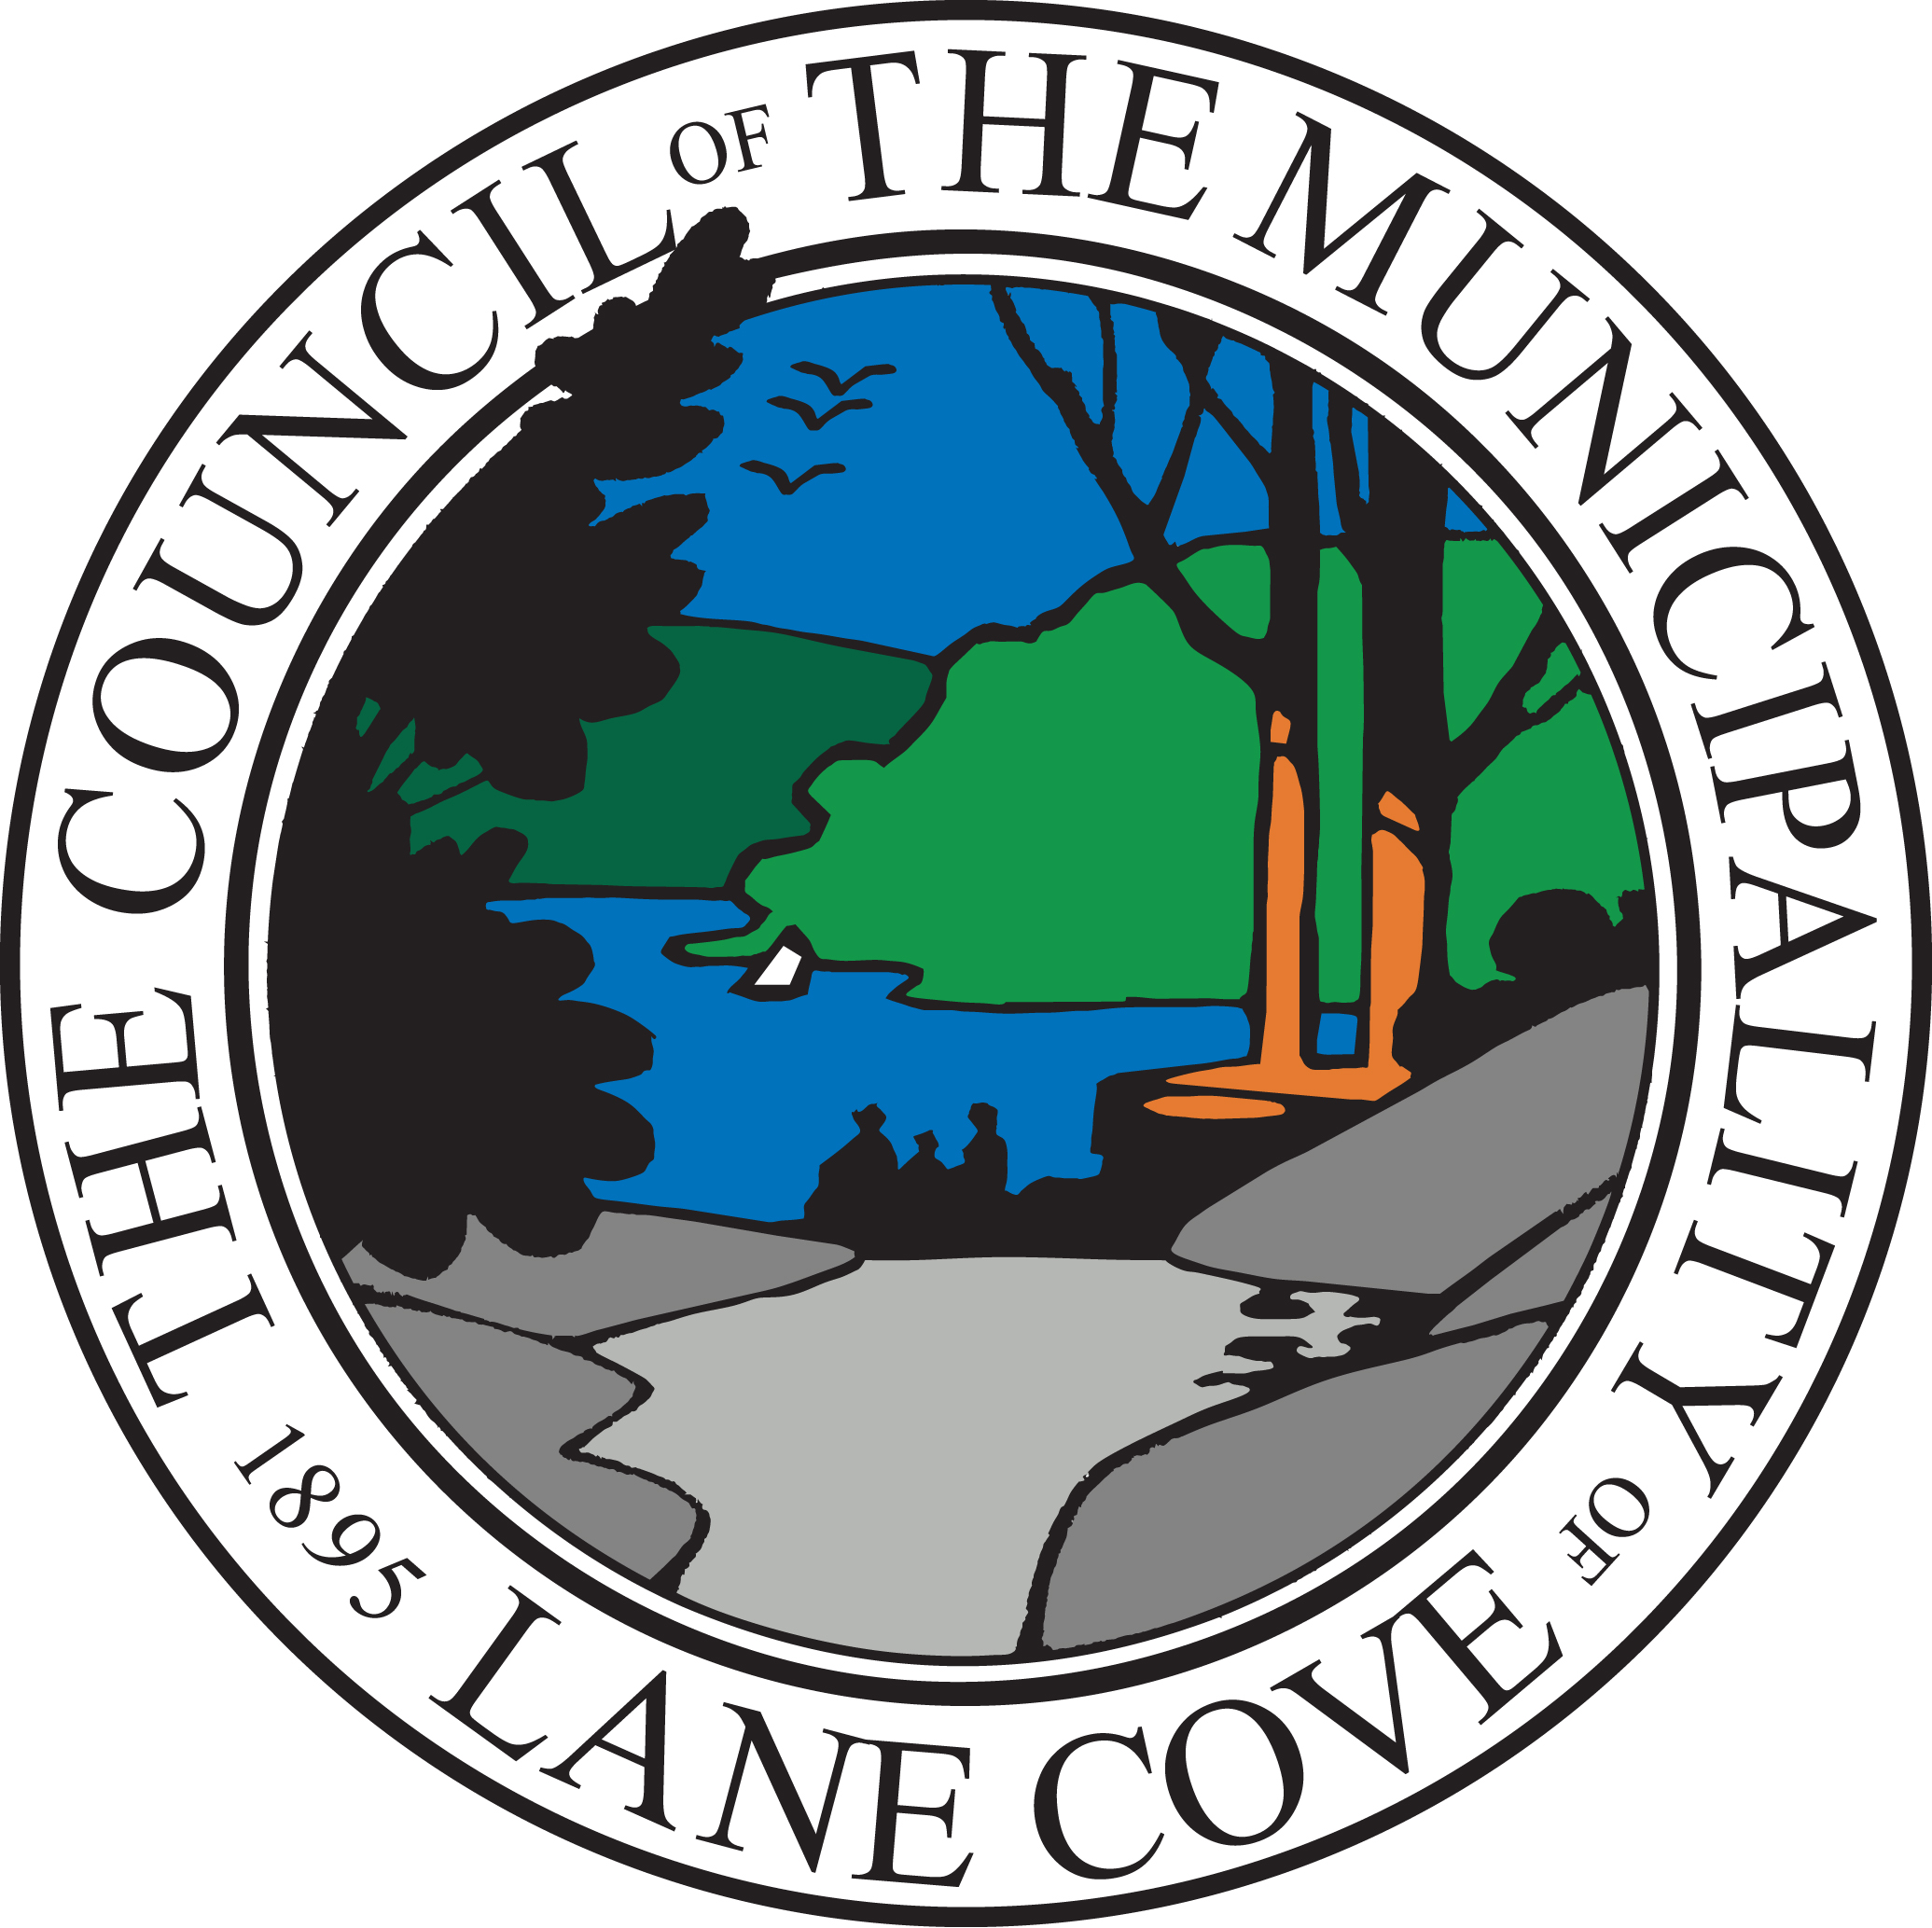 Lane Cove Council Final Inspection Report